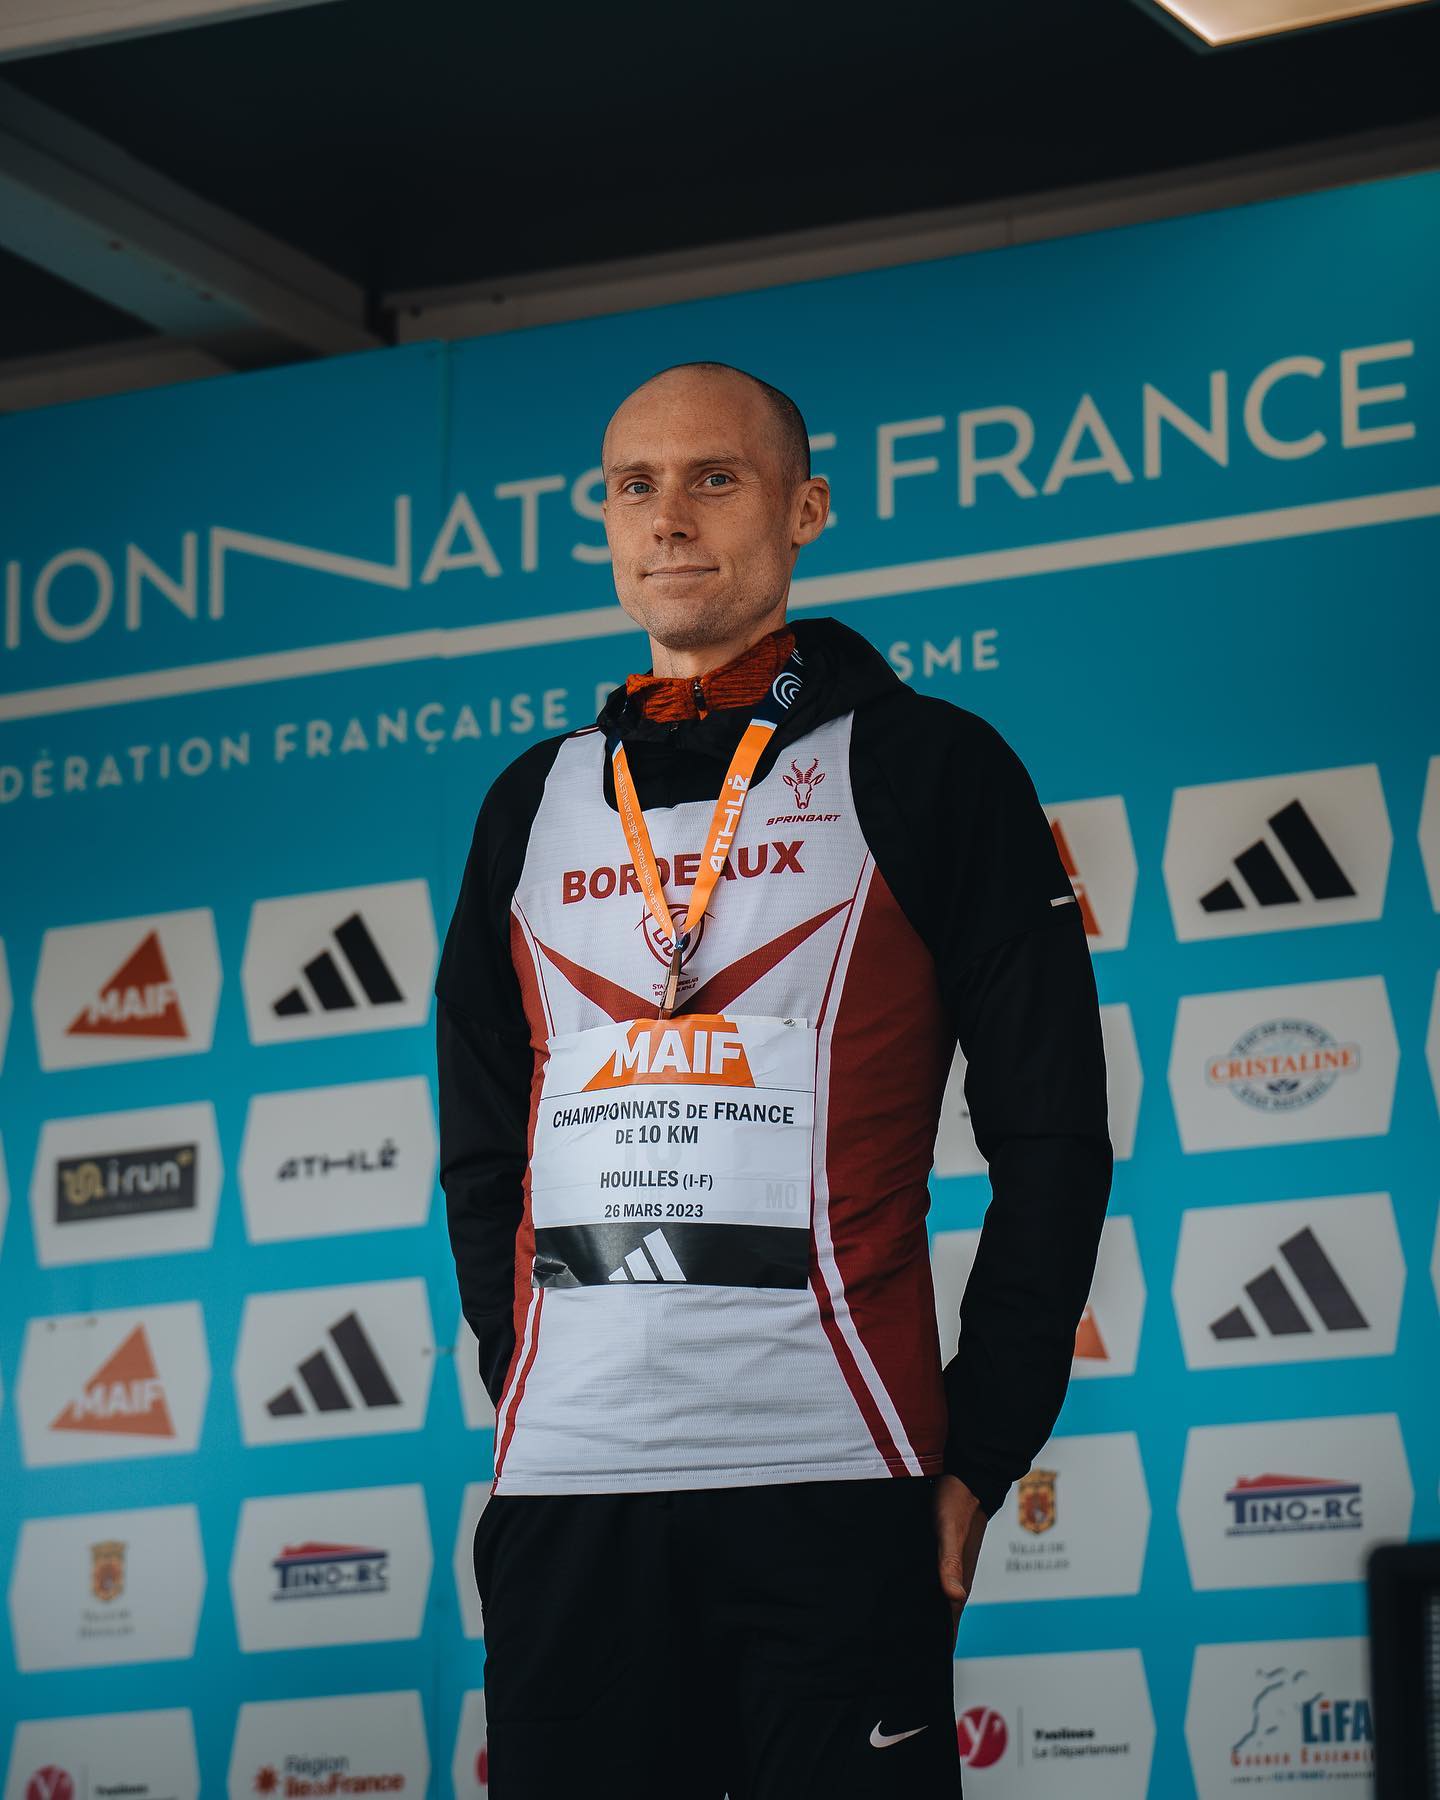 Jeff LASTENNET m\xe9daill\xe9 de bronze en M0 aux Championnats de France de 10km